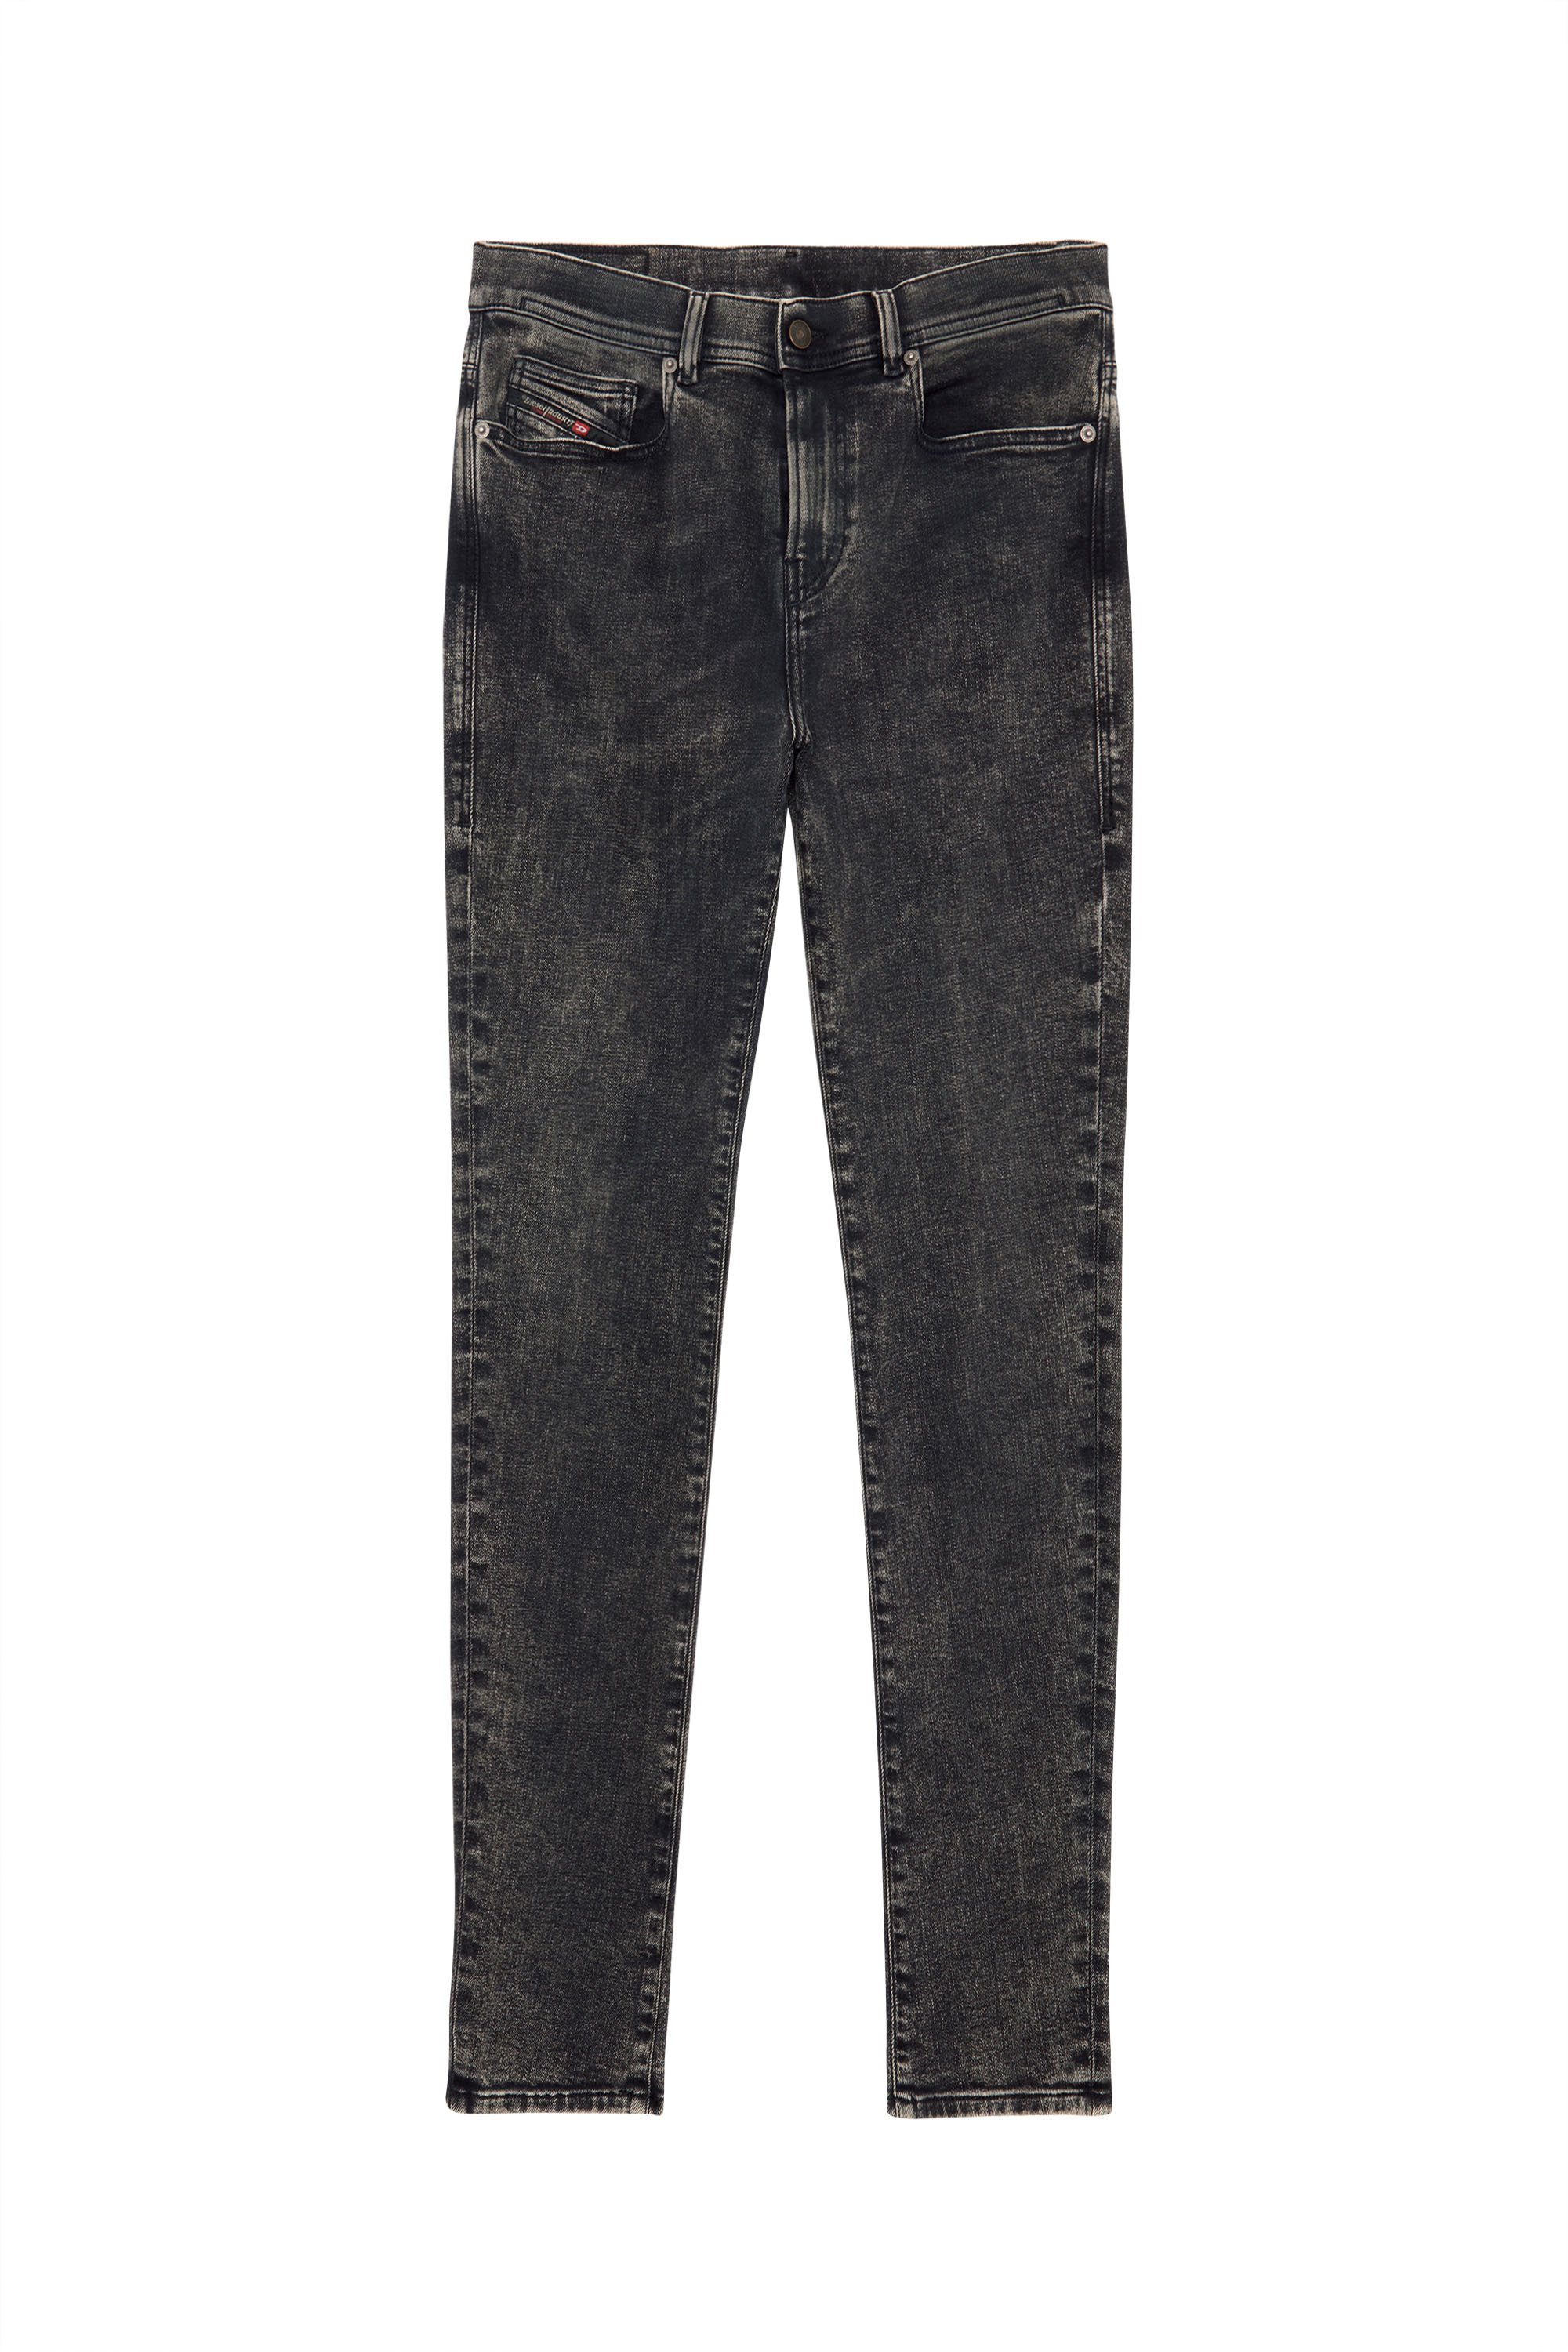 Diesel - Skinny Jeans 1983 D-Amny 09C22,  - Image 3